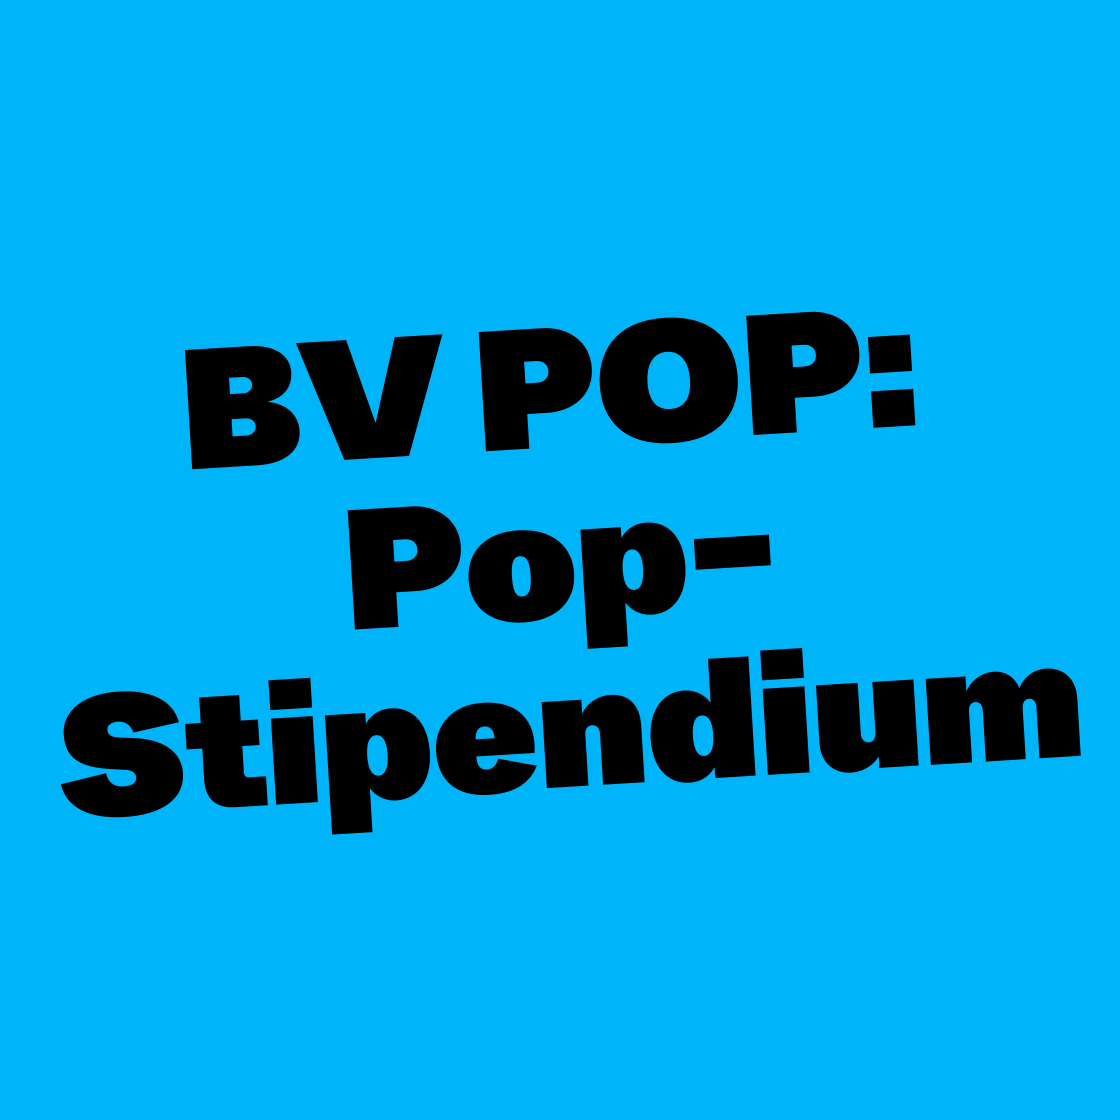 BV POP: Pop-Stipendium